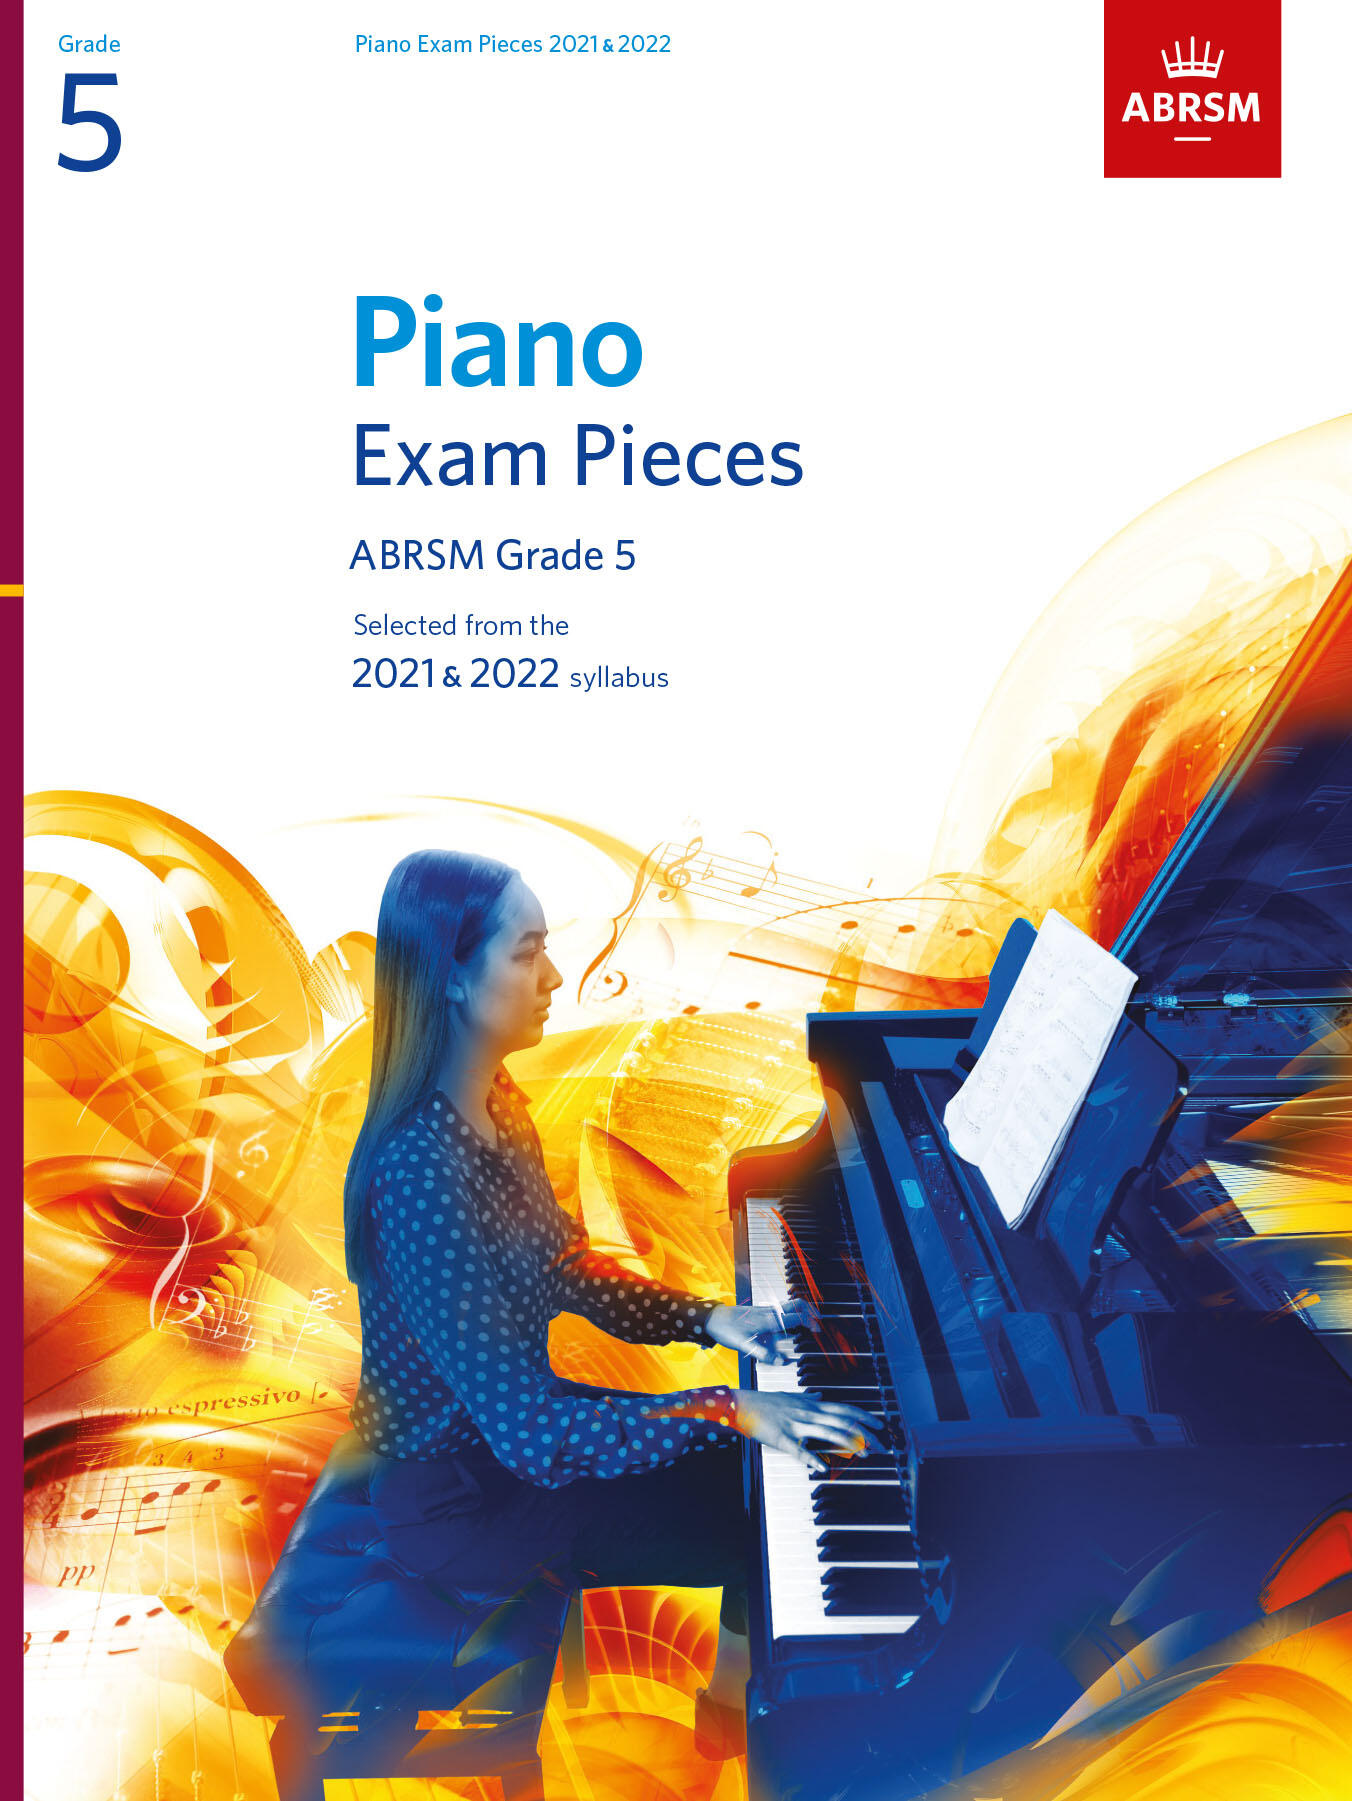 ABRSM Piano Exam Pieces 2021 & 2022 - Grade 5 : photo 1